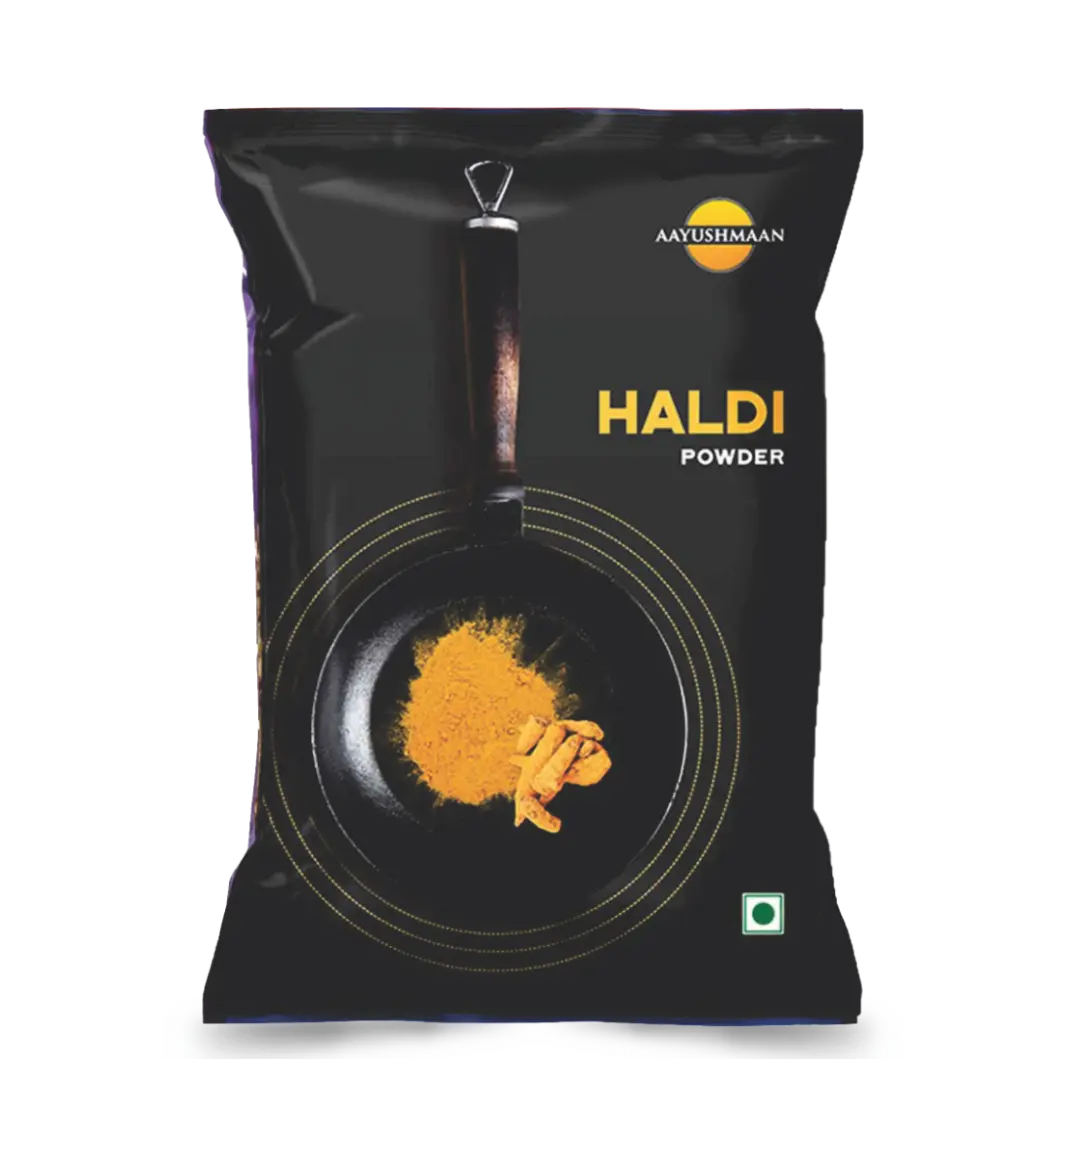 Haldi Powder - 500gm best turmeric powder